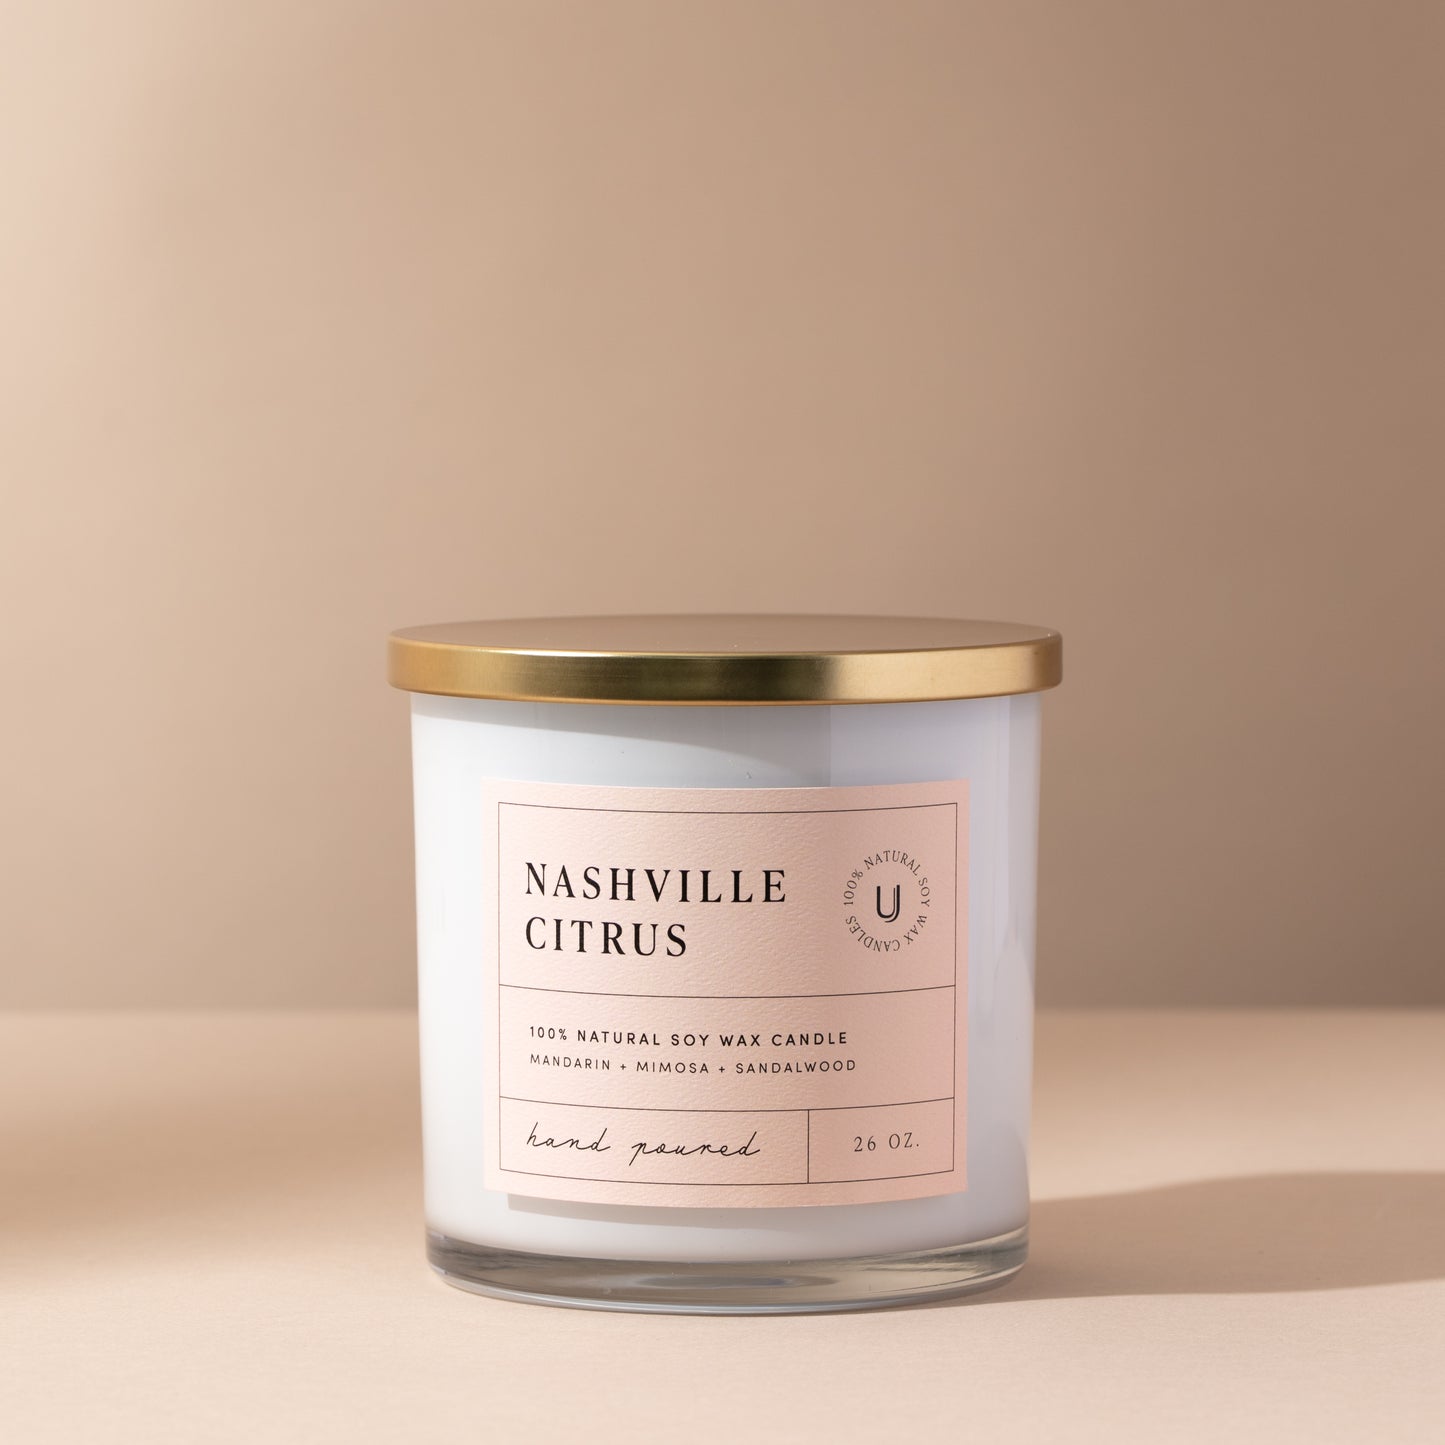 Nashville Citrus Candle | 26 OZ | Product Detail Image 4 | Uncommon James Home